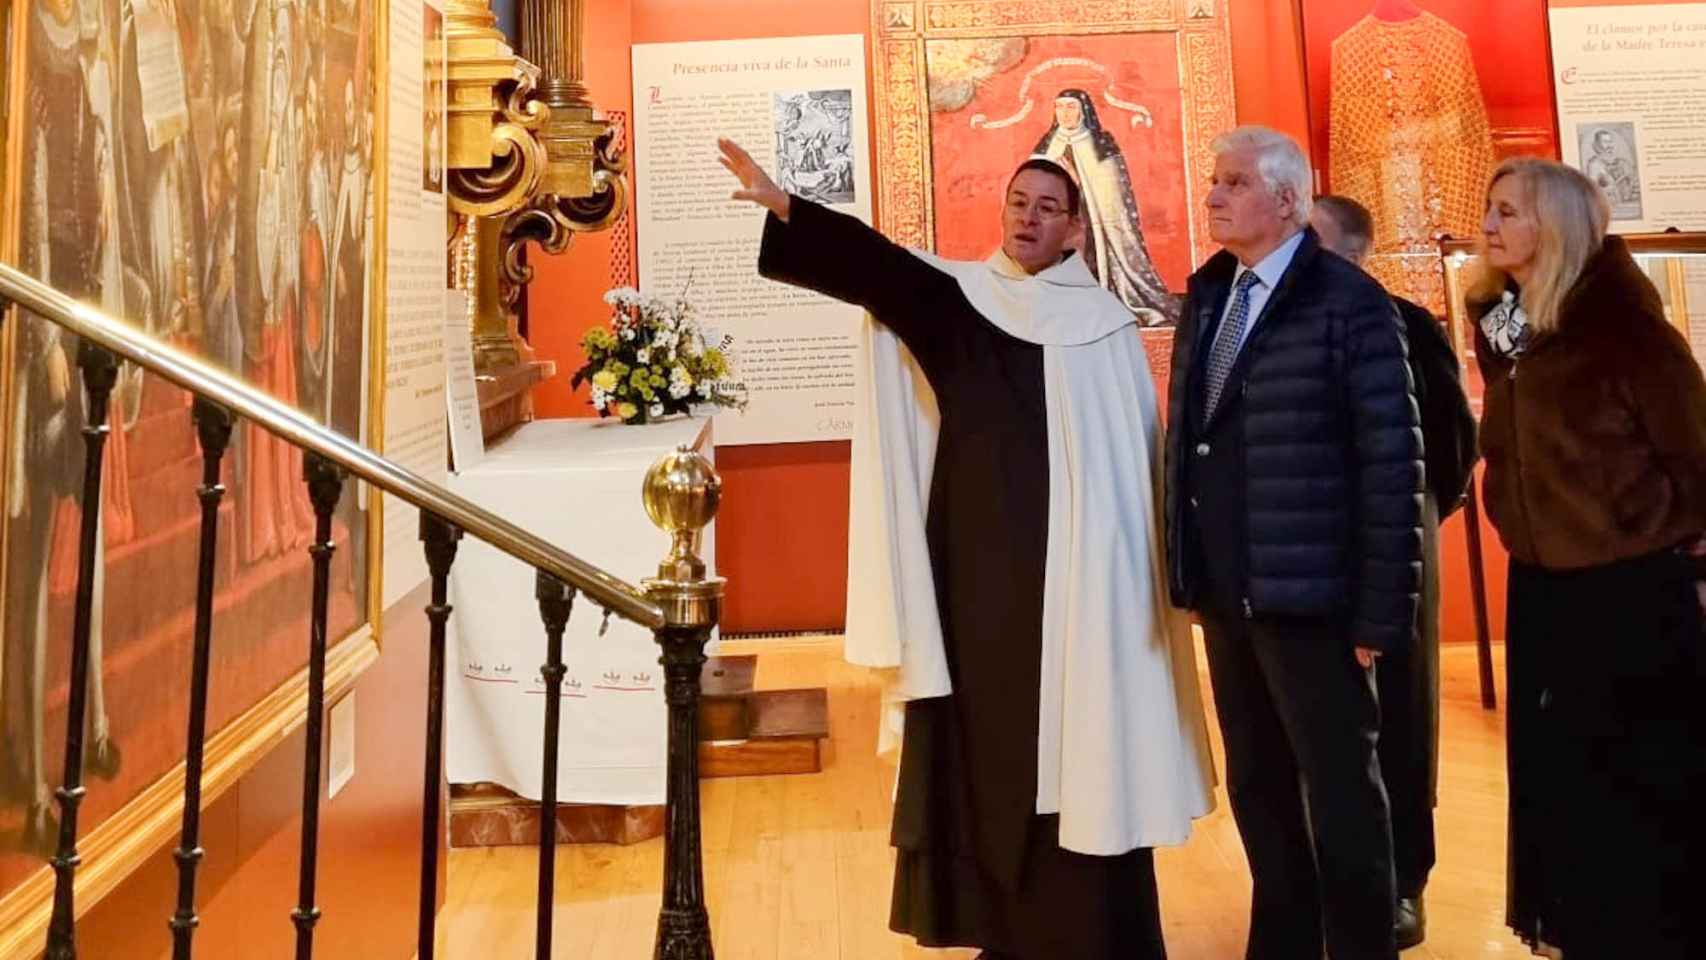 Visita del duque de Alba a la exposición sobre Santa Teresa en Alba de Tormes